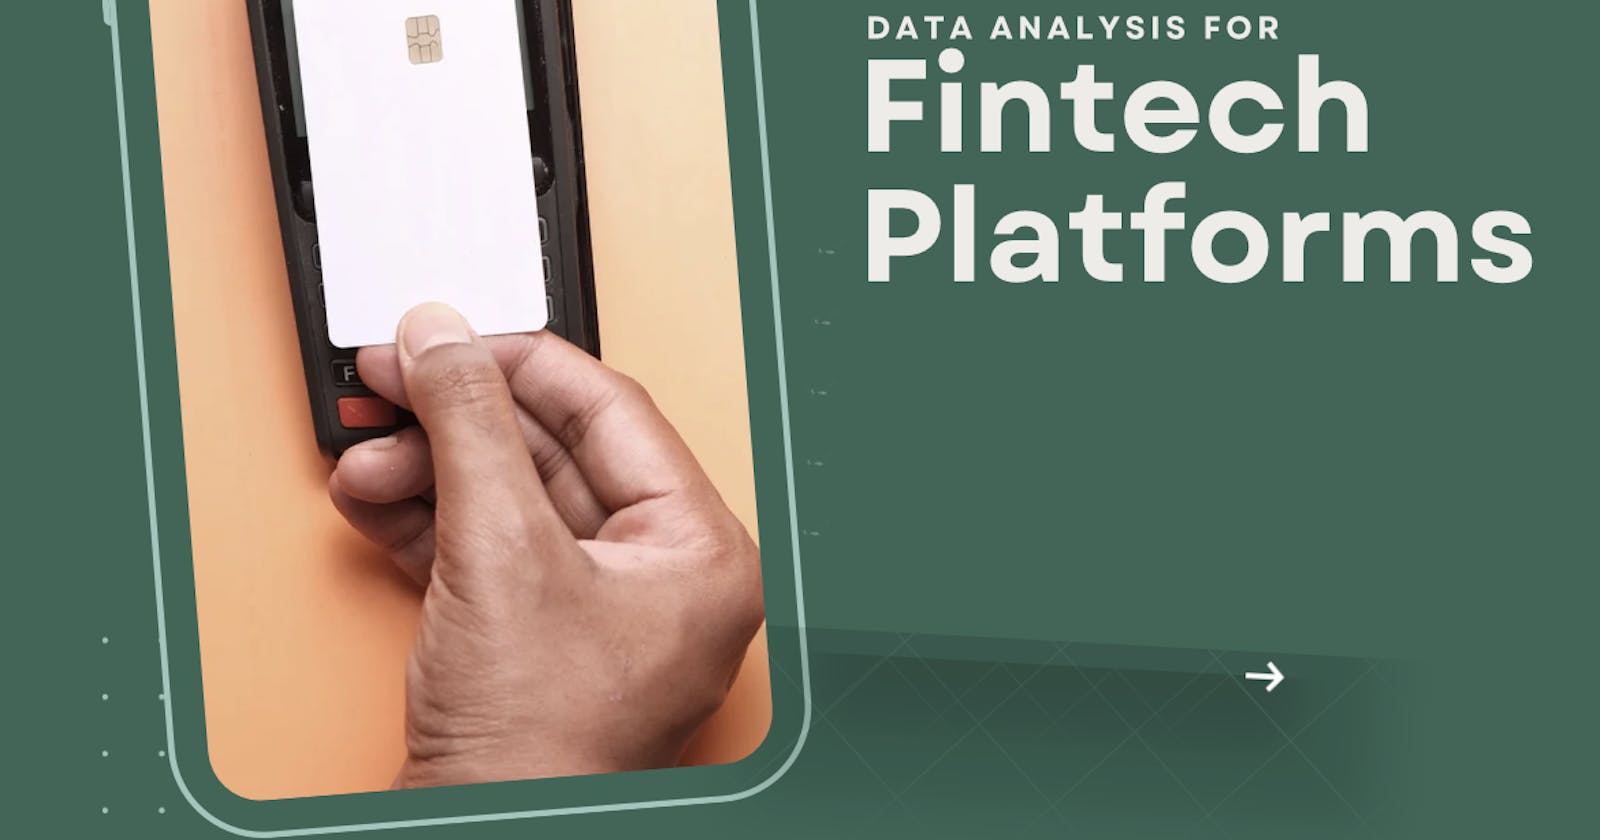 Data Analysis for Fintech Platforms